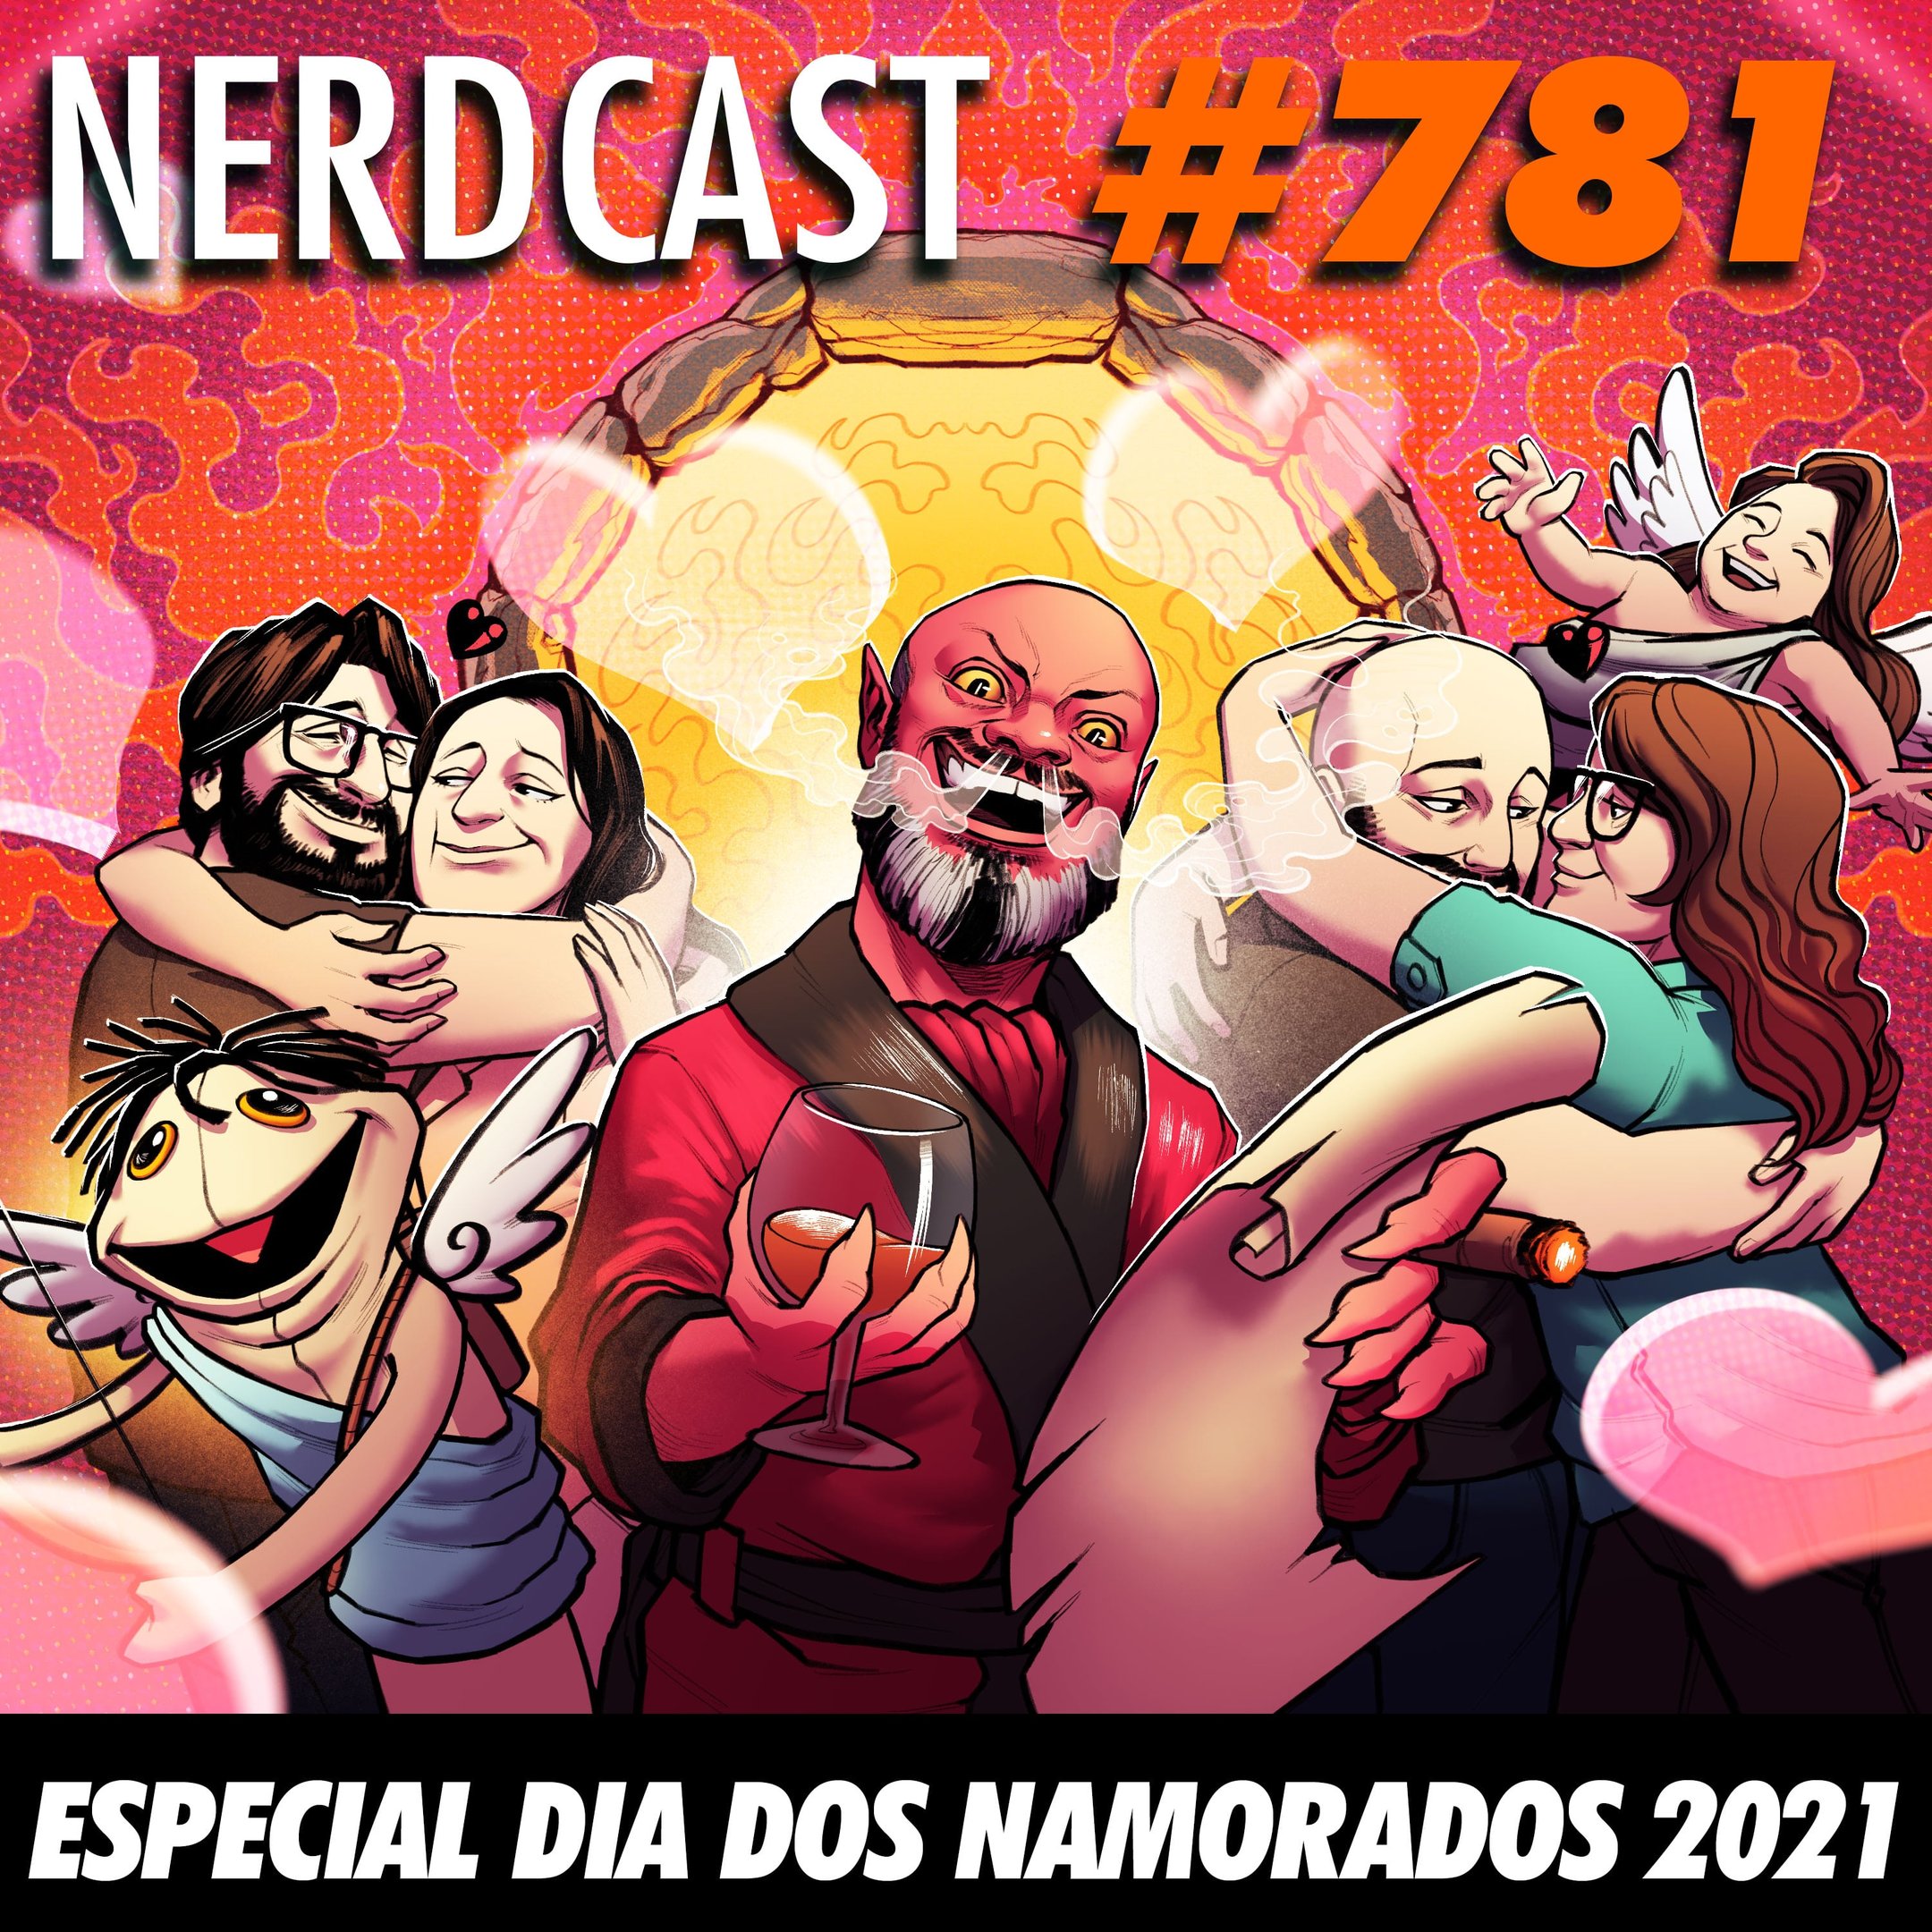 NerdCast 781 - Especial Dia dos Namorados 2021